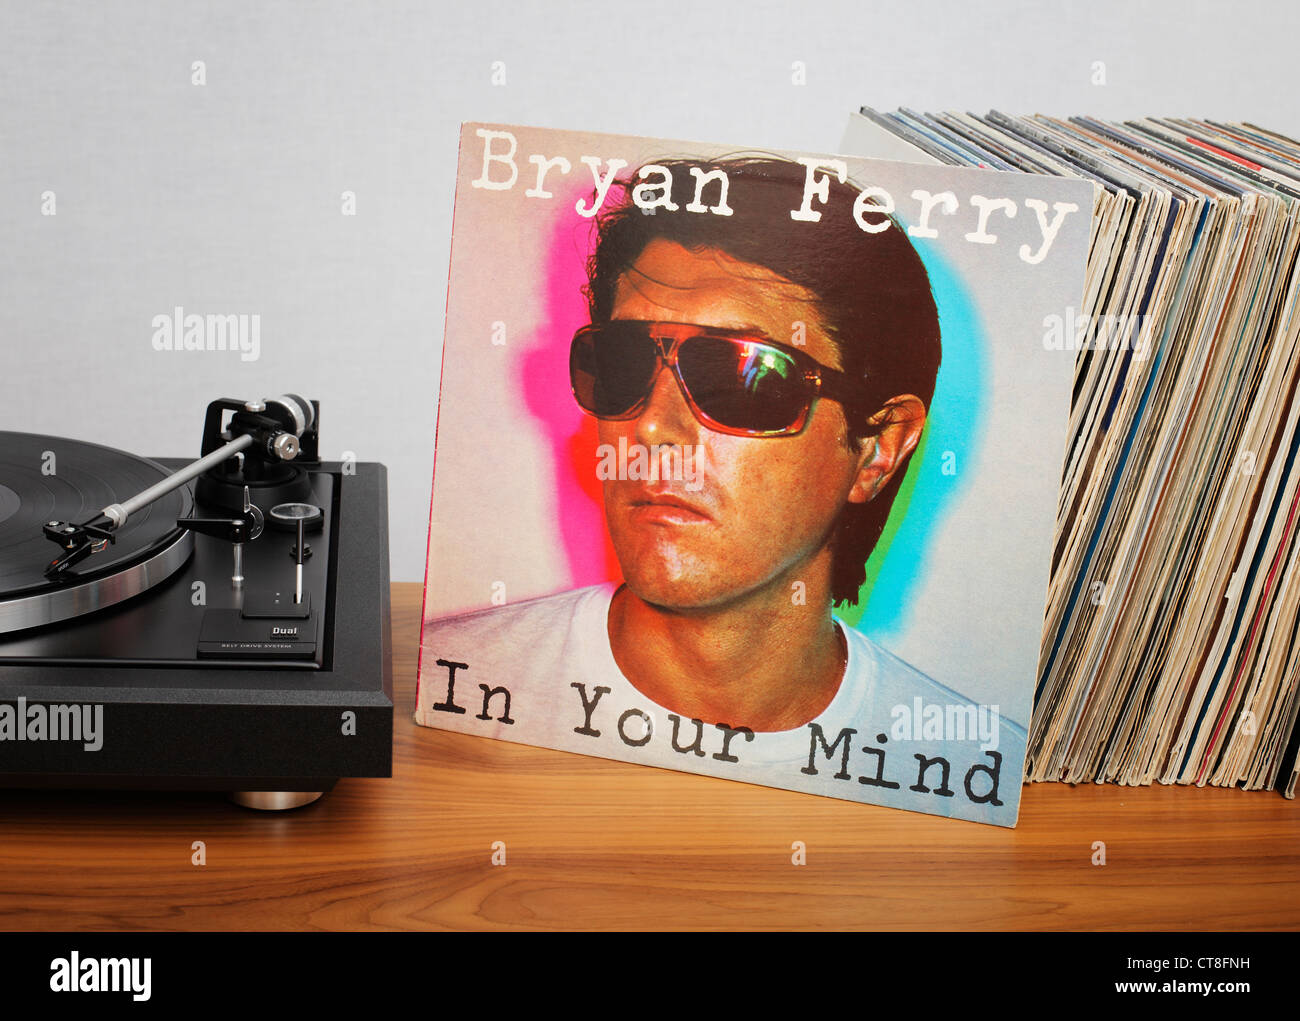 Dans votre esprit est un album de 1977 par Bryan Ferry. Banque D'Images